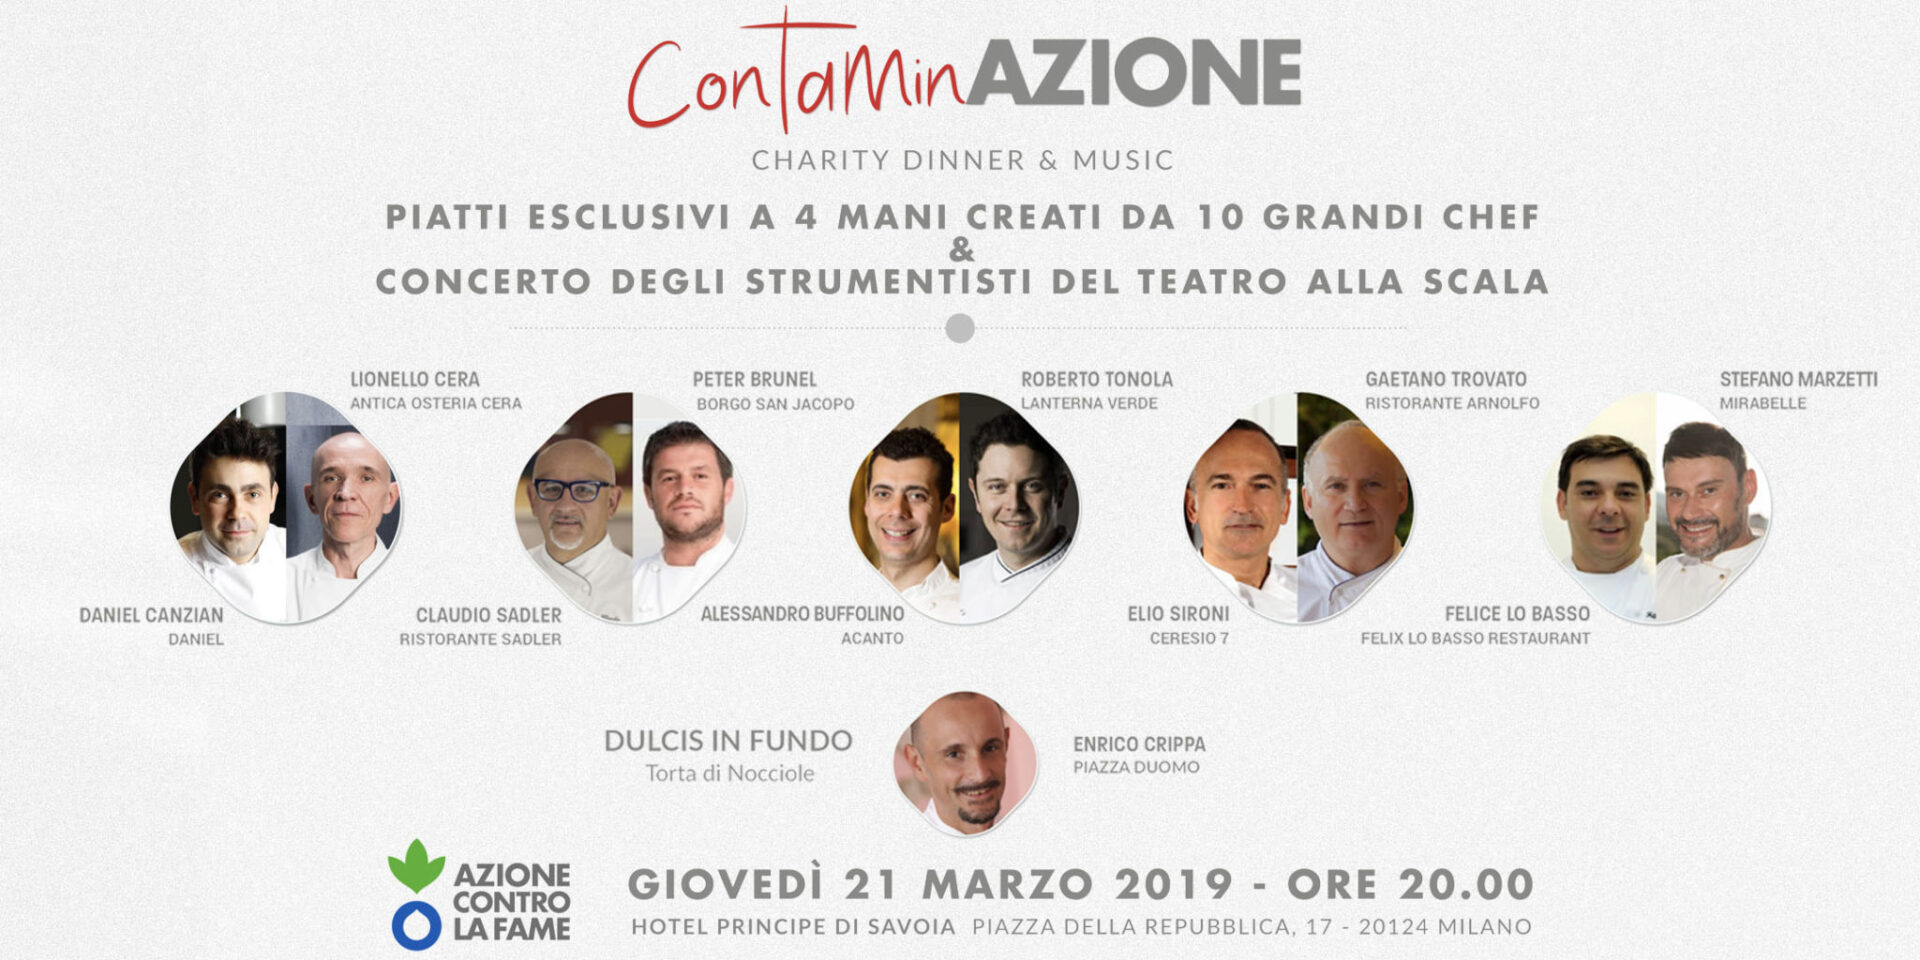 A Milano ContaminAzione Charity Dinner di Azione contro la Fame - Sapori News 